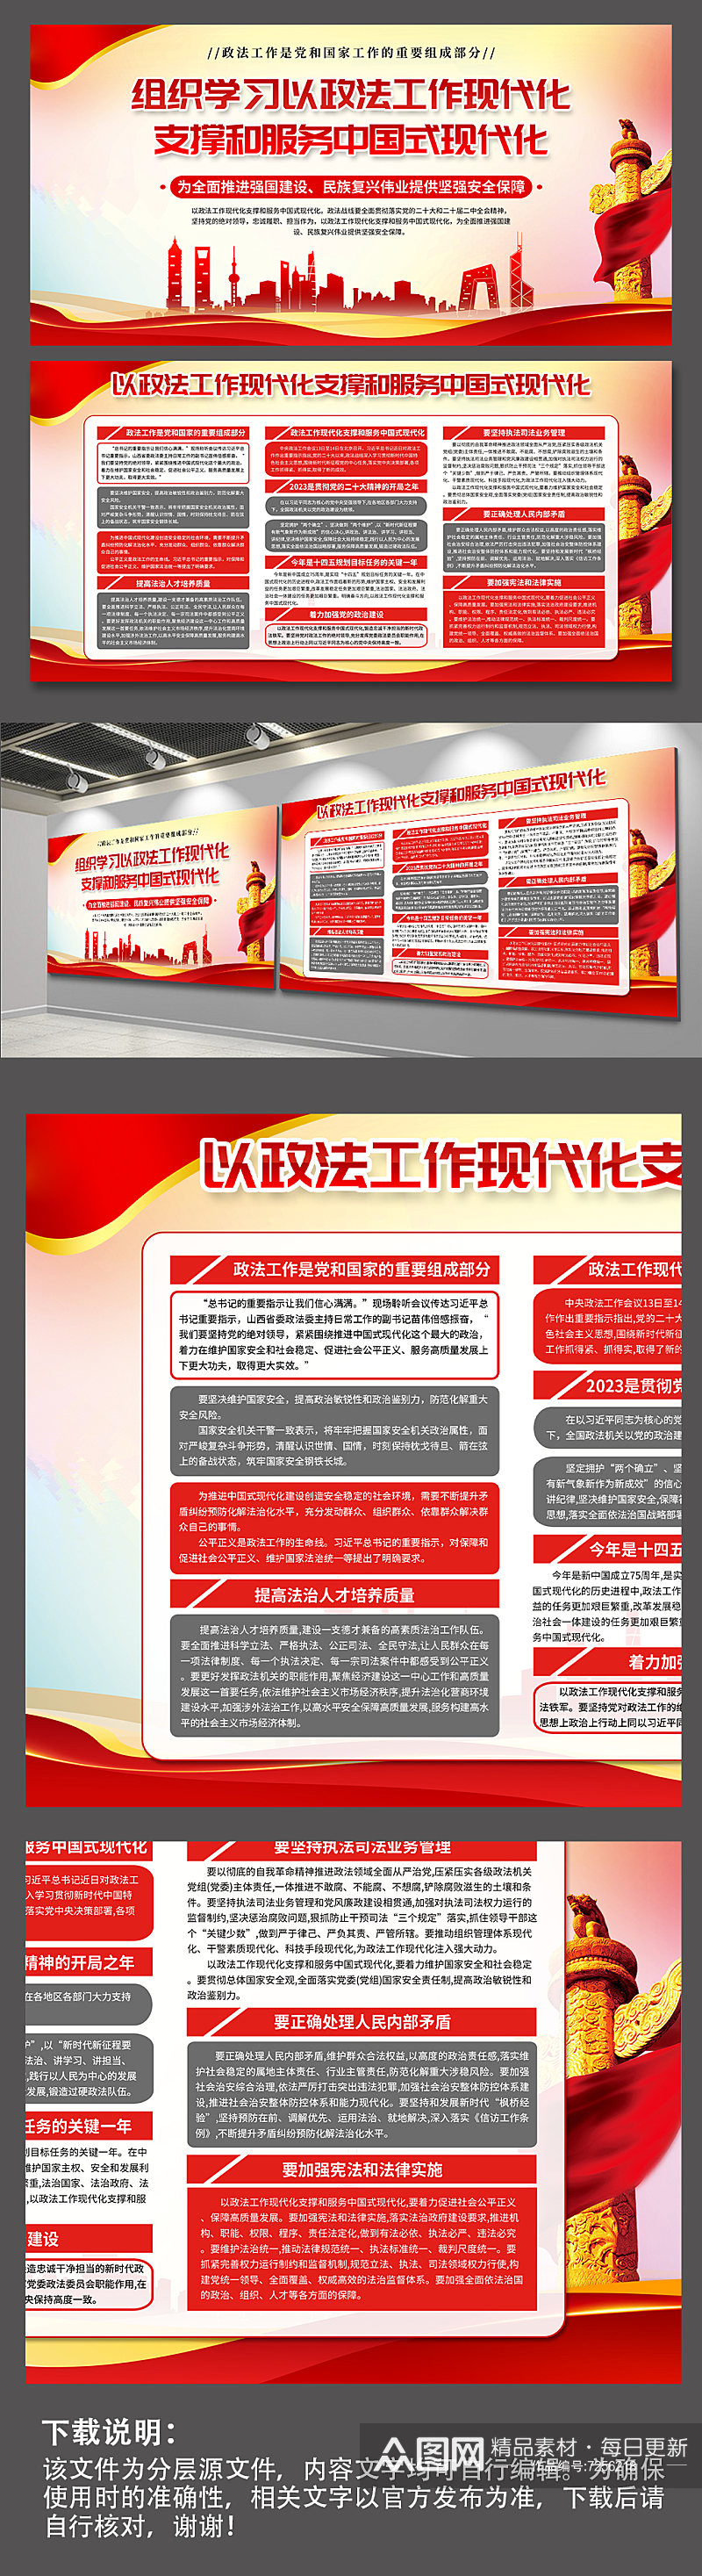 政法工作现代化支撑和服务中国式现代化展板素材